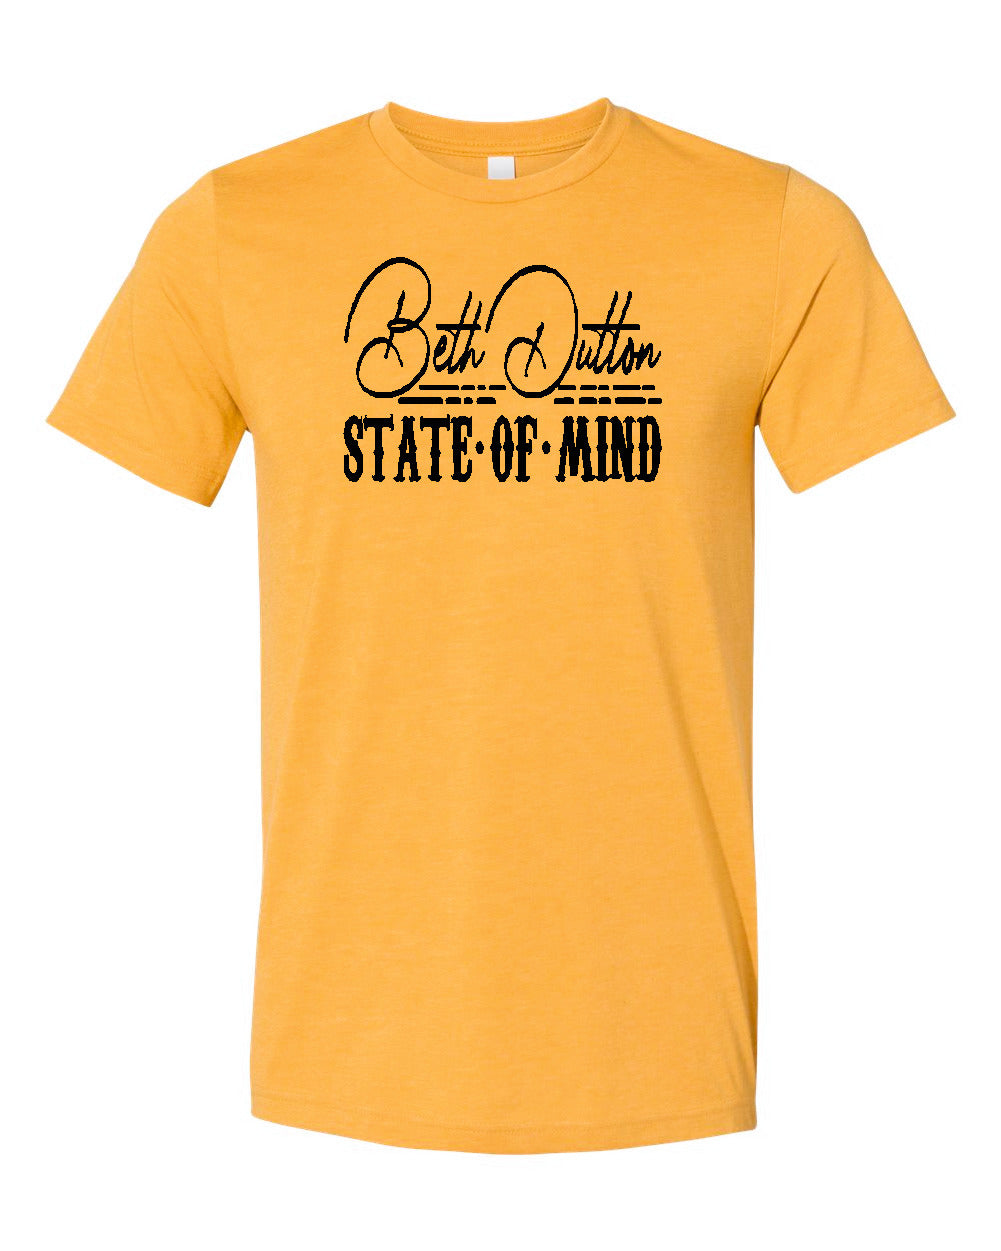 Yellowstone Beth Dutton State of Mind Bella Canvas Tshirt - Heather Mustard